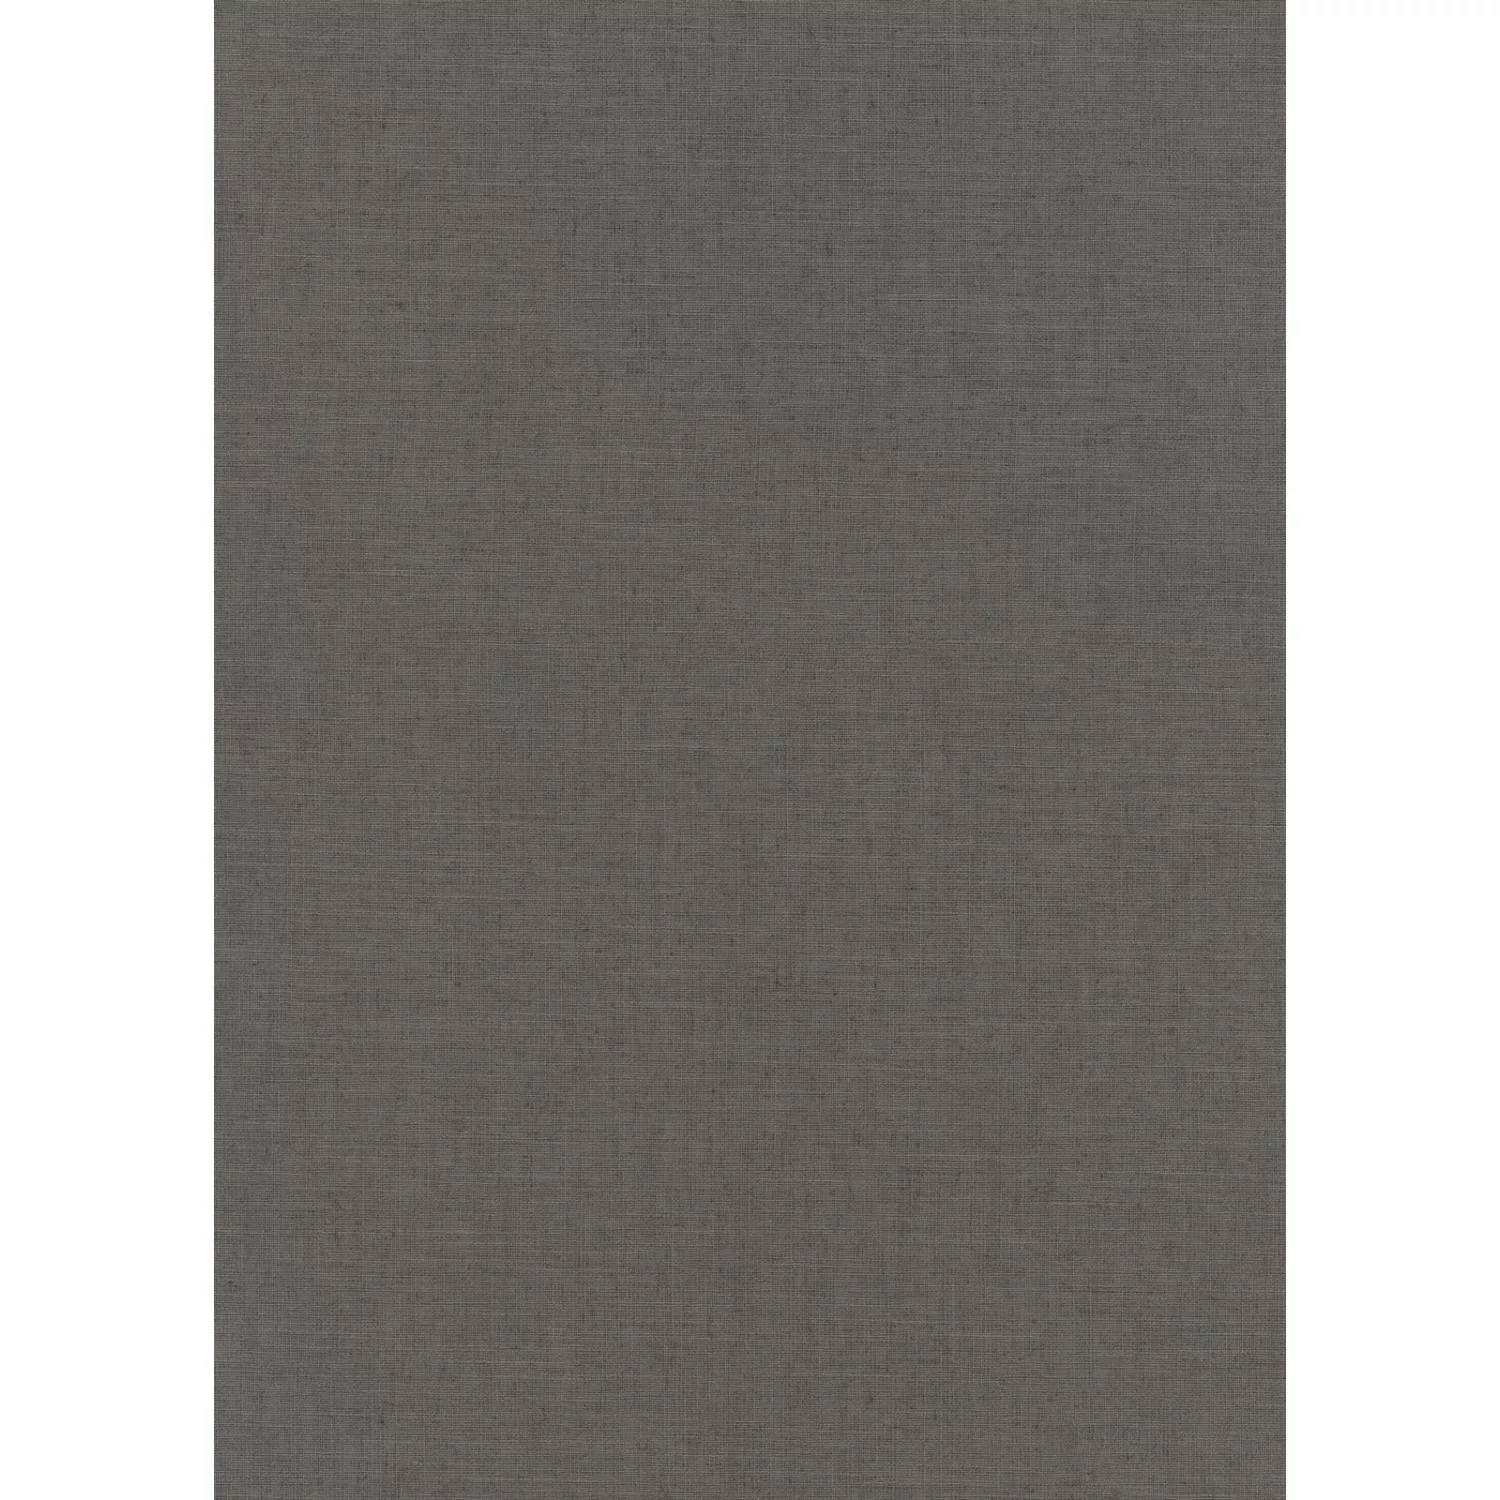 Bricoflor Einfarbige Tapete in Grau 10262-10 günstig online kaufen